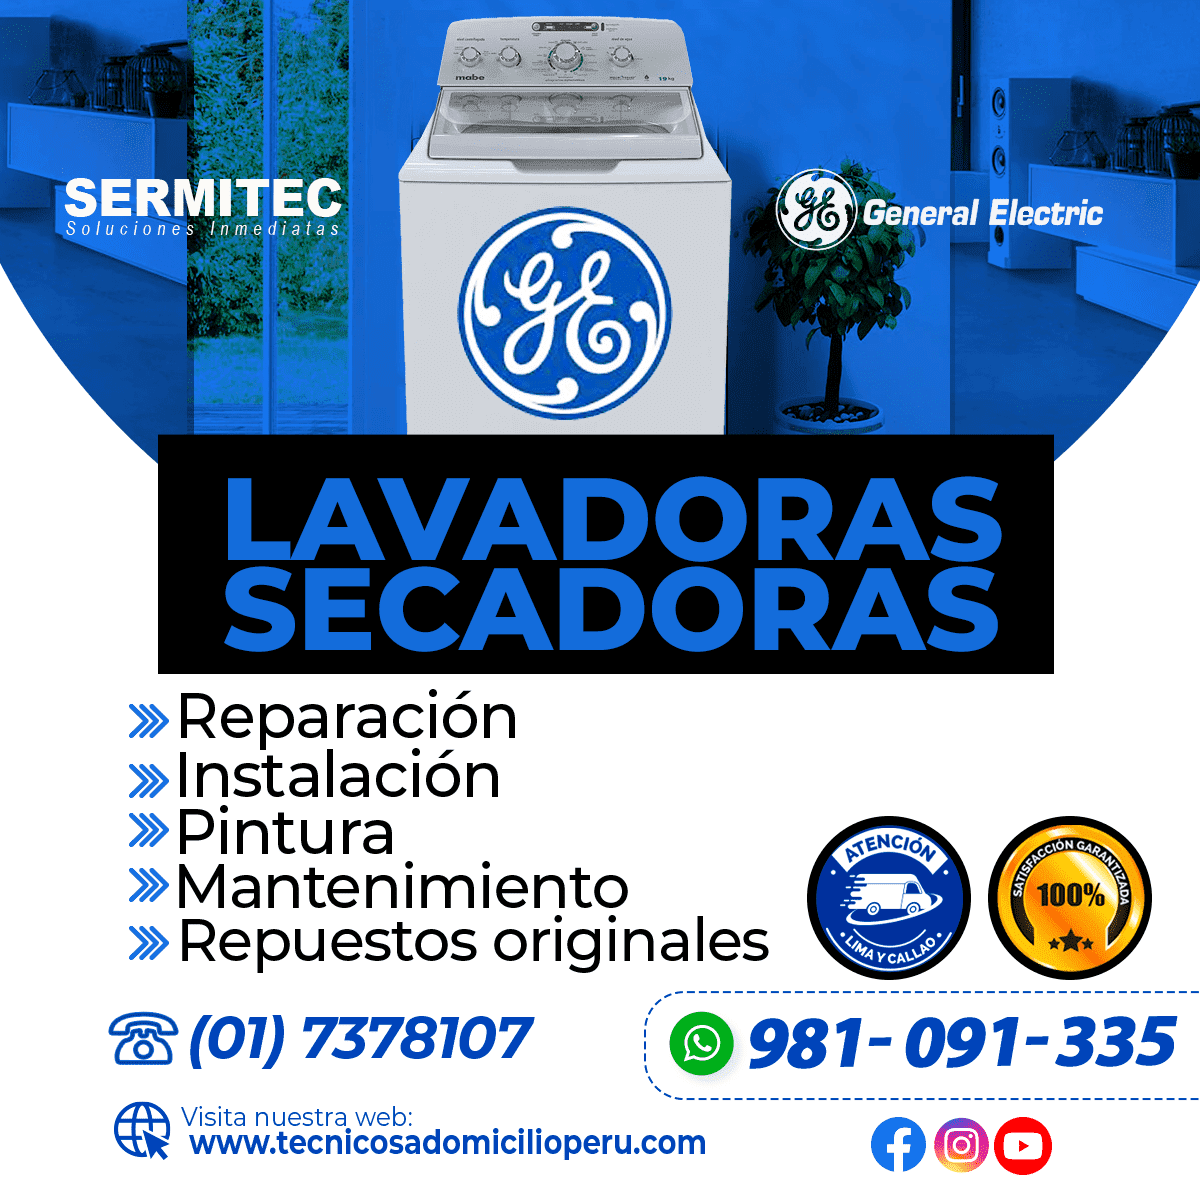 GENERAL ELECTRIC Reparación de Lavadoras 981091335 LURIN